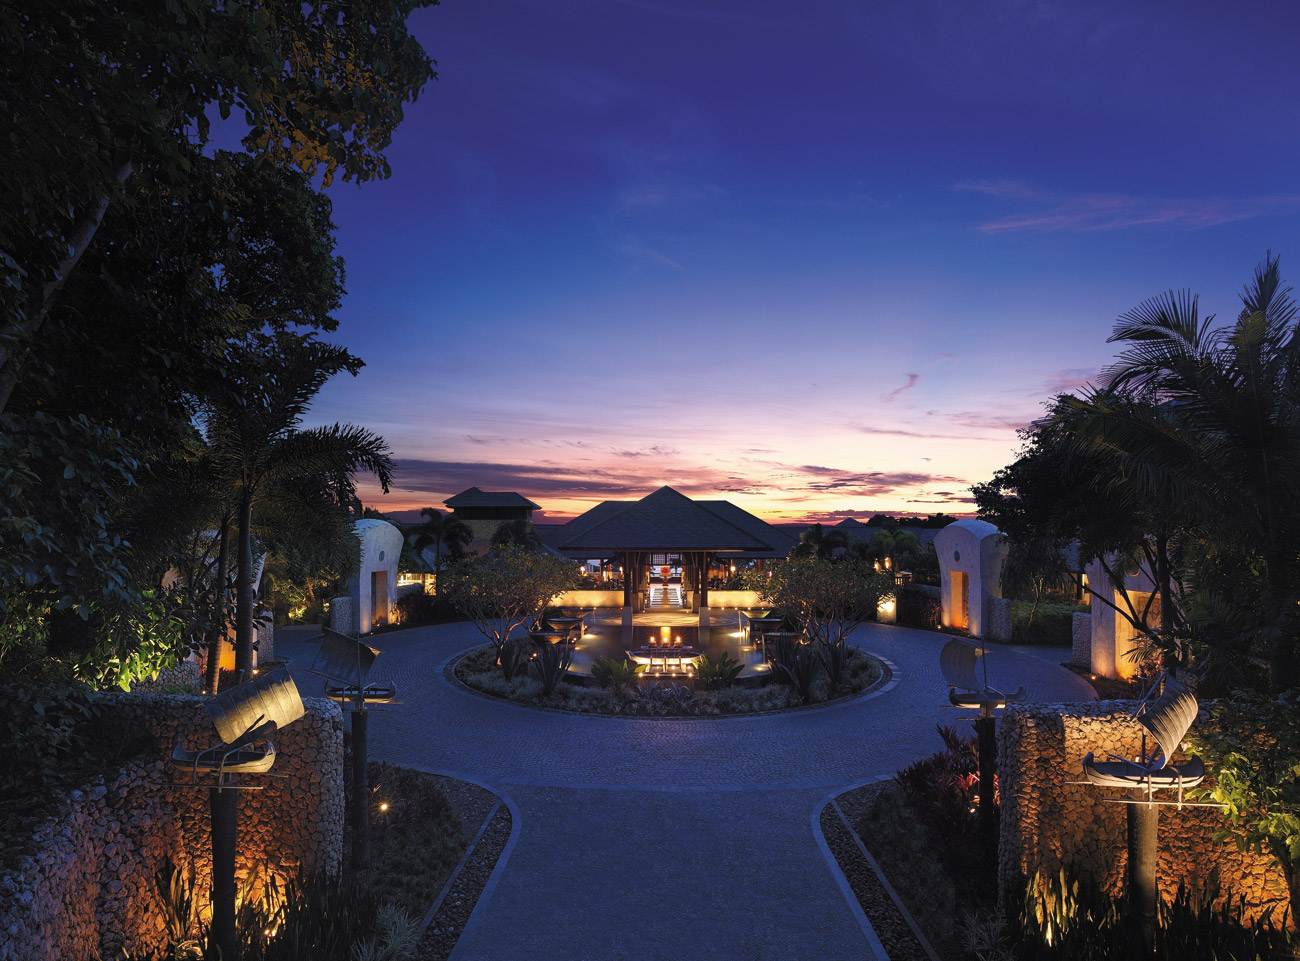 Ngắm thiết kế nội thất resort Boracay ở Shangri-La đẹp mê hồn > Ngắm thiết kế nội thất resort Boracay ở Shangri-La đẹp mê hồn